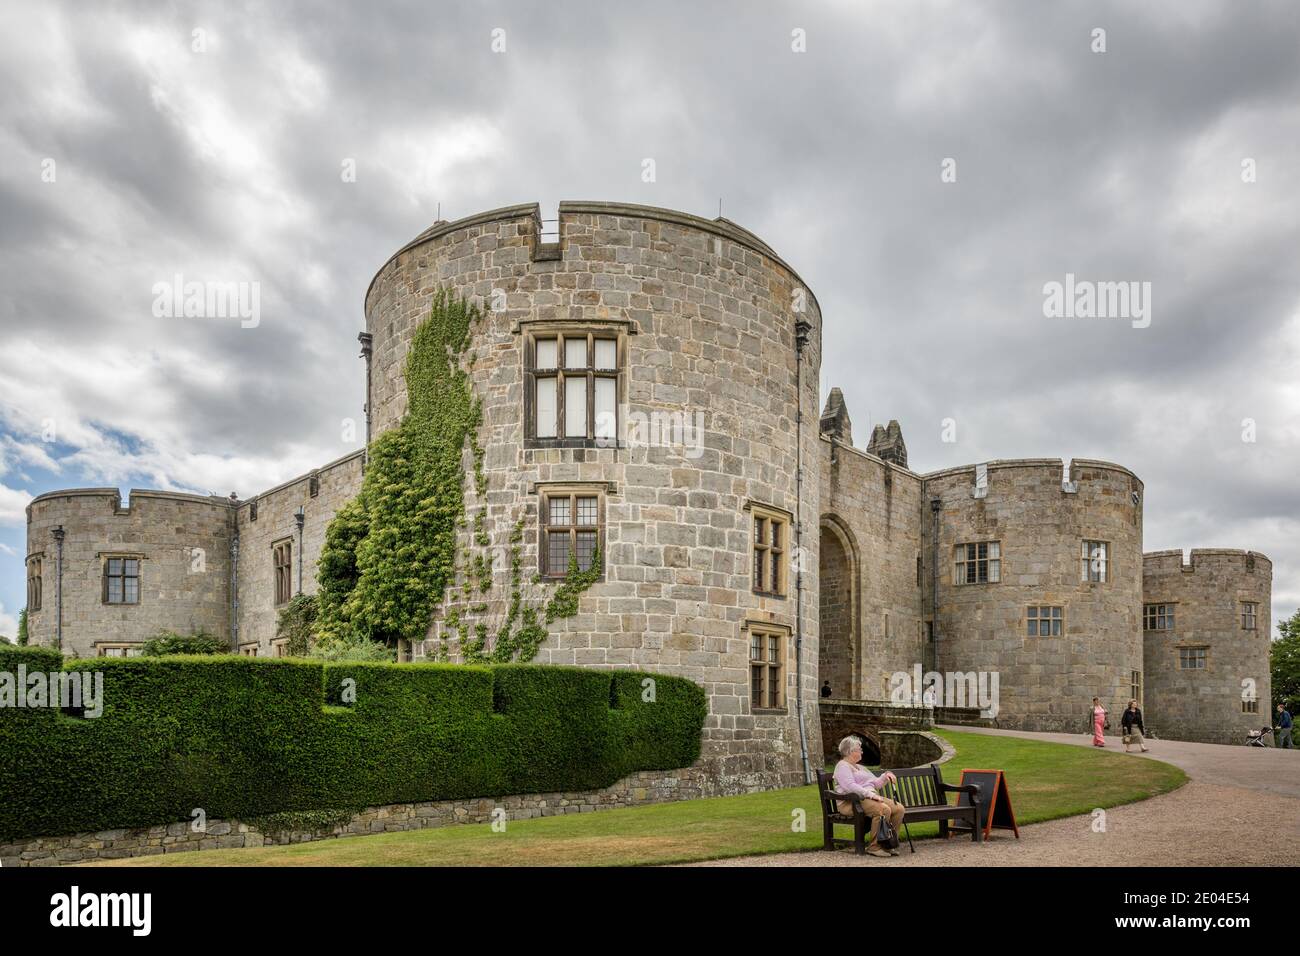 Le château de Chirk est un château classé de catégorie I sur la frontière gallois anglaise à Chirk près de Wrexham dans le nord du pays de Galles. Banque D'Images